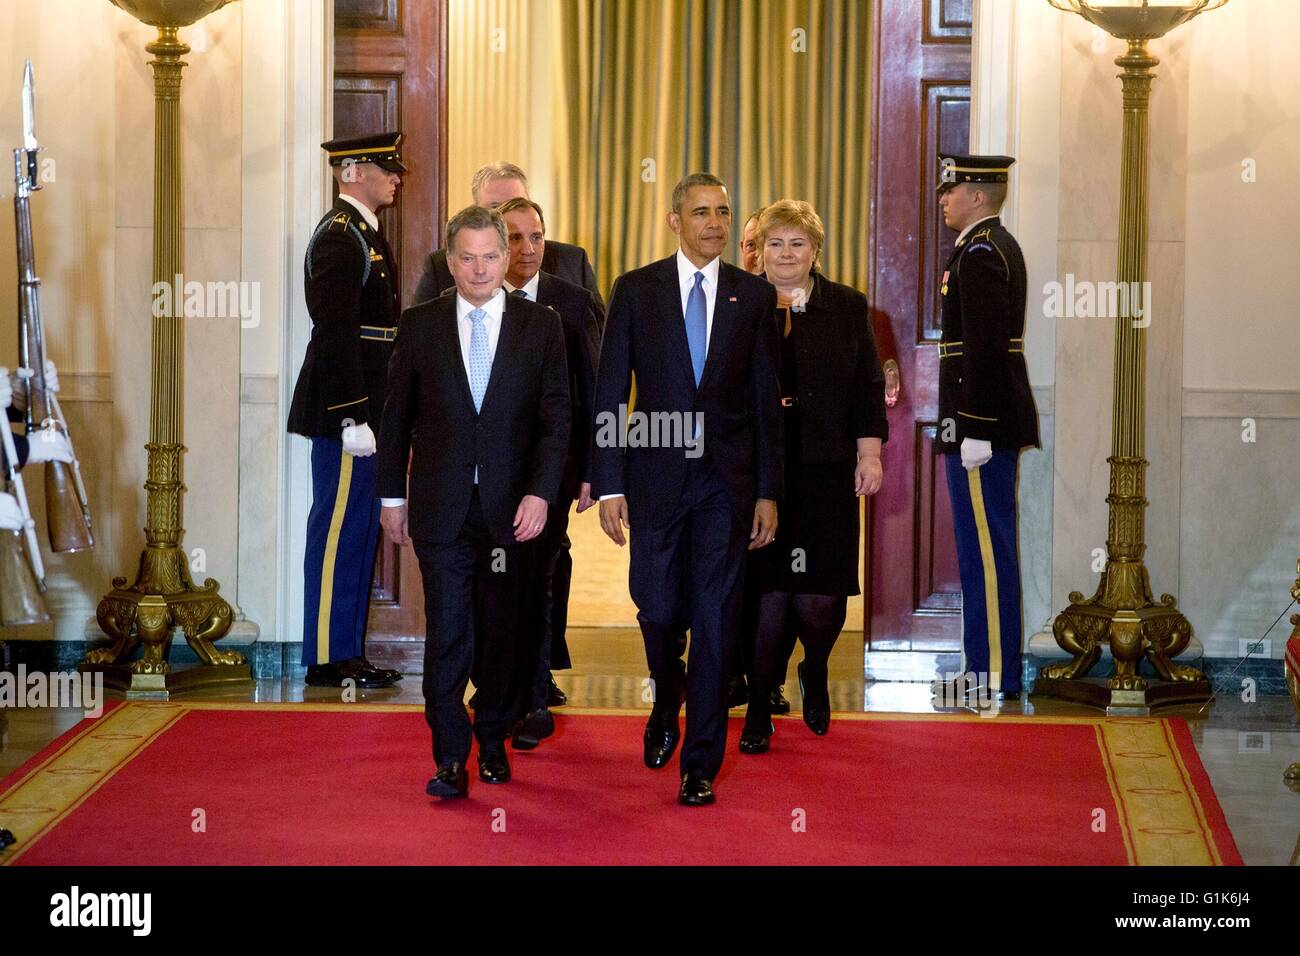 Président américain Barack Obama marche avec les dirigeants des pays nordiques dans la salle avant l'arrivée cérémonie à la Maison Blanche le 13 mai 2016 à Washington, DC. Banque D'Images